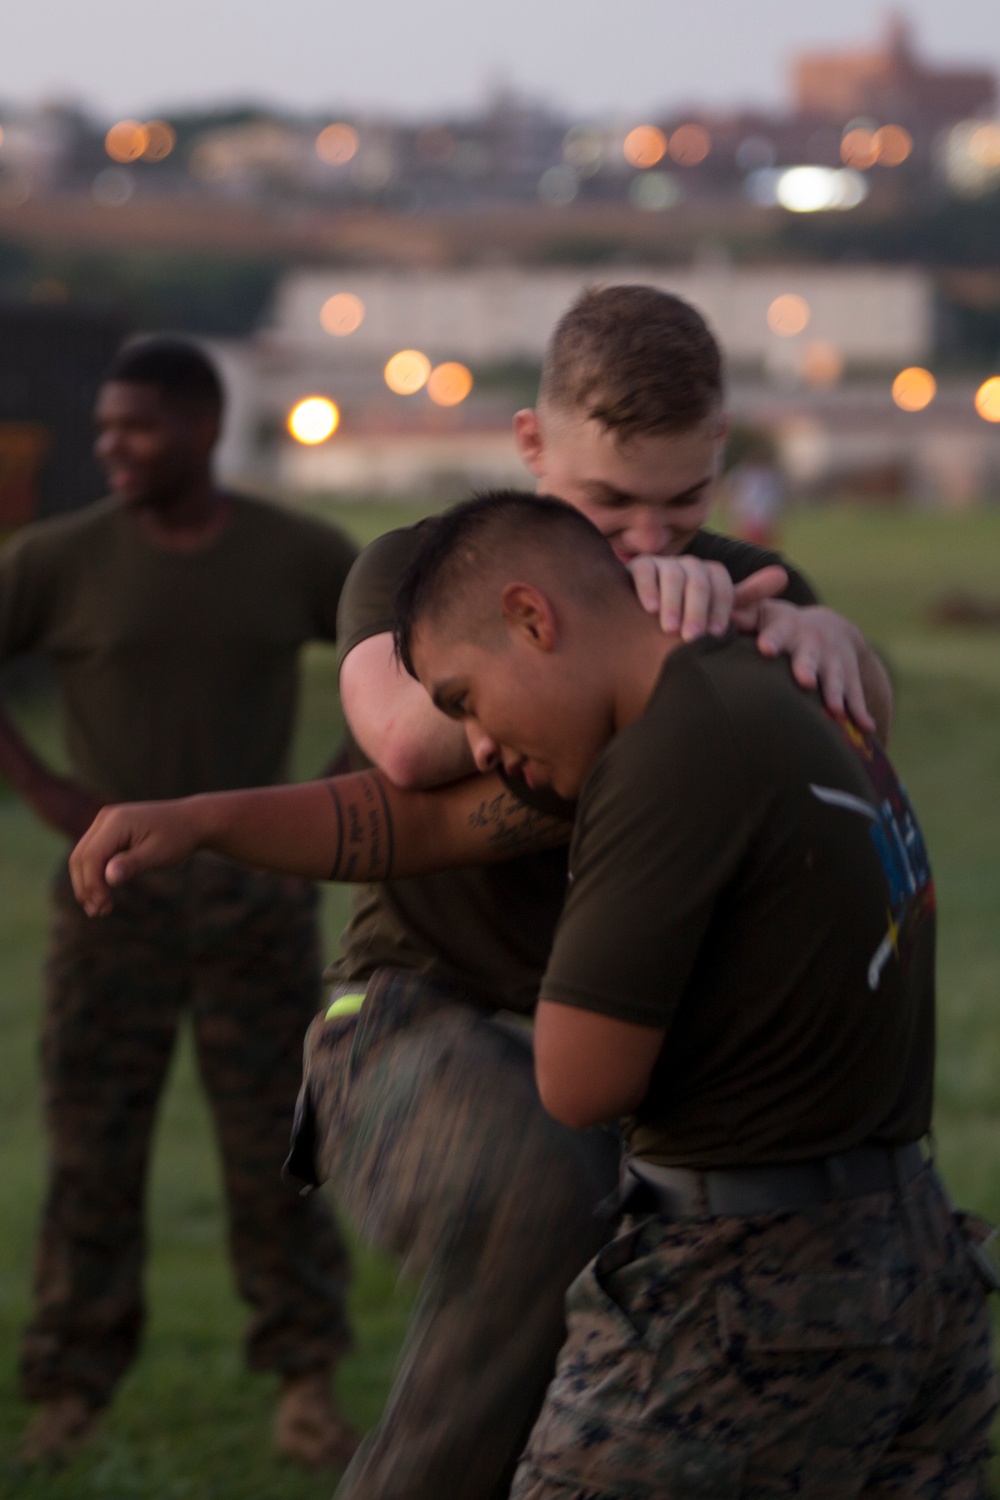 Jody Scott; the Domino Effect of his MCMAP on Okinawa Marines